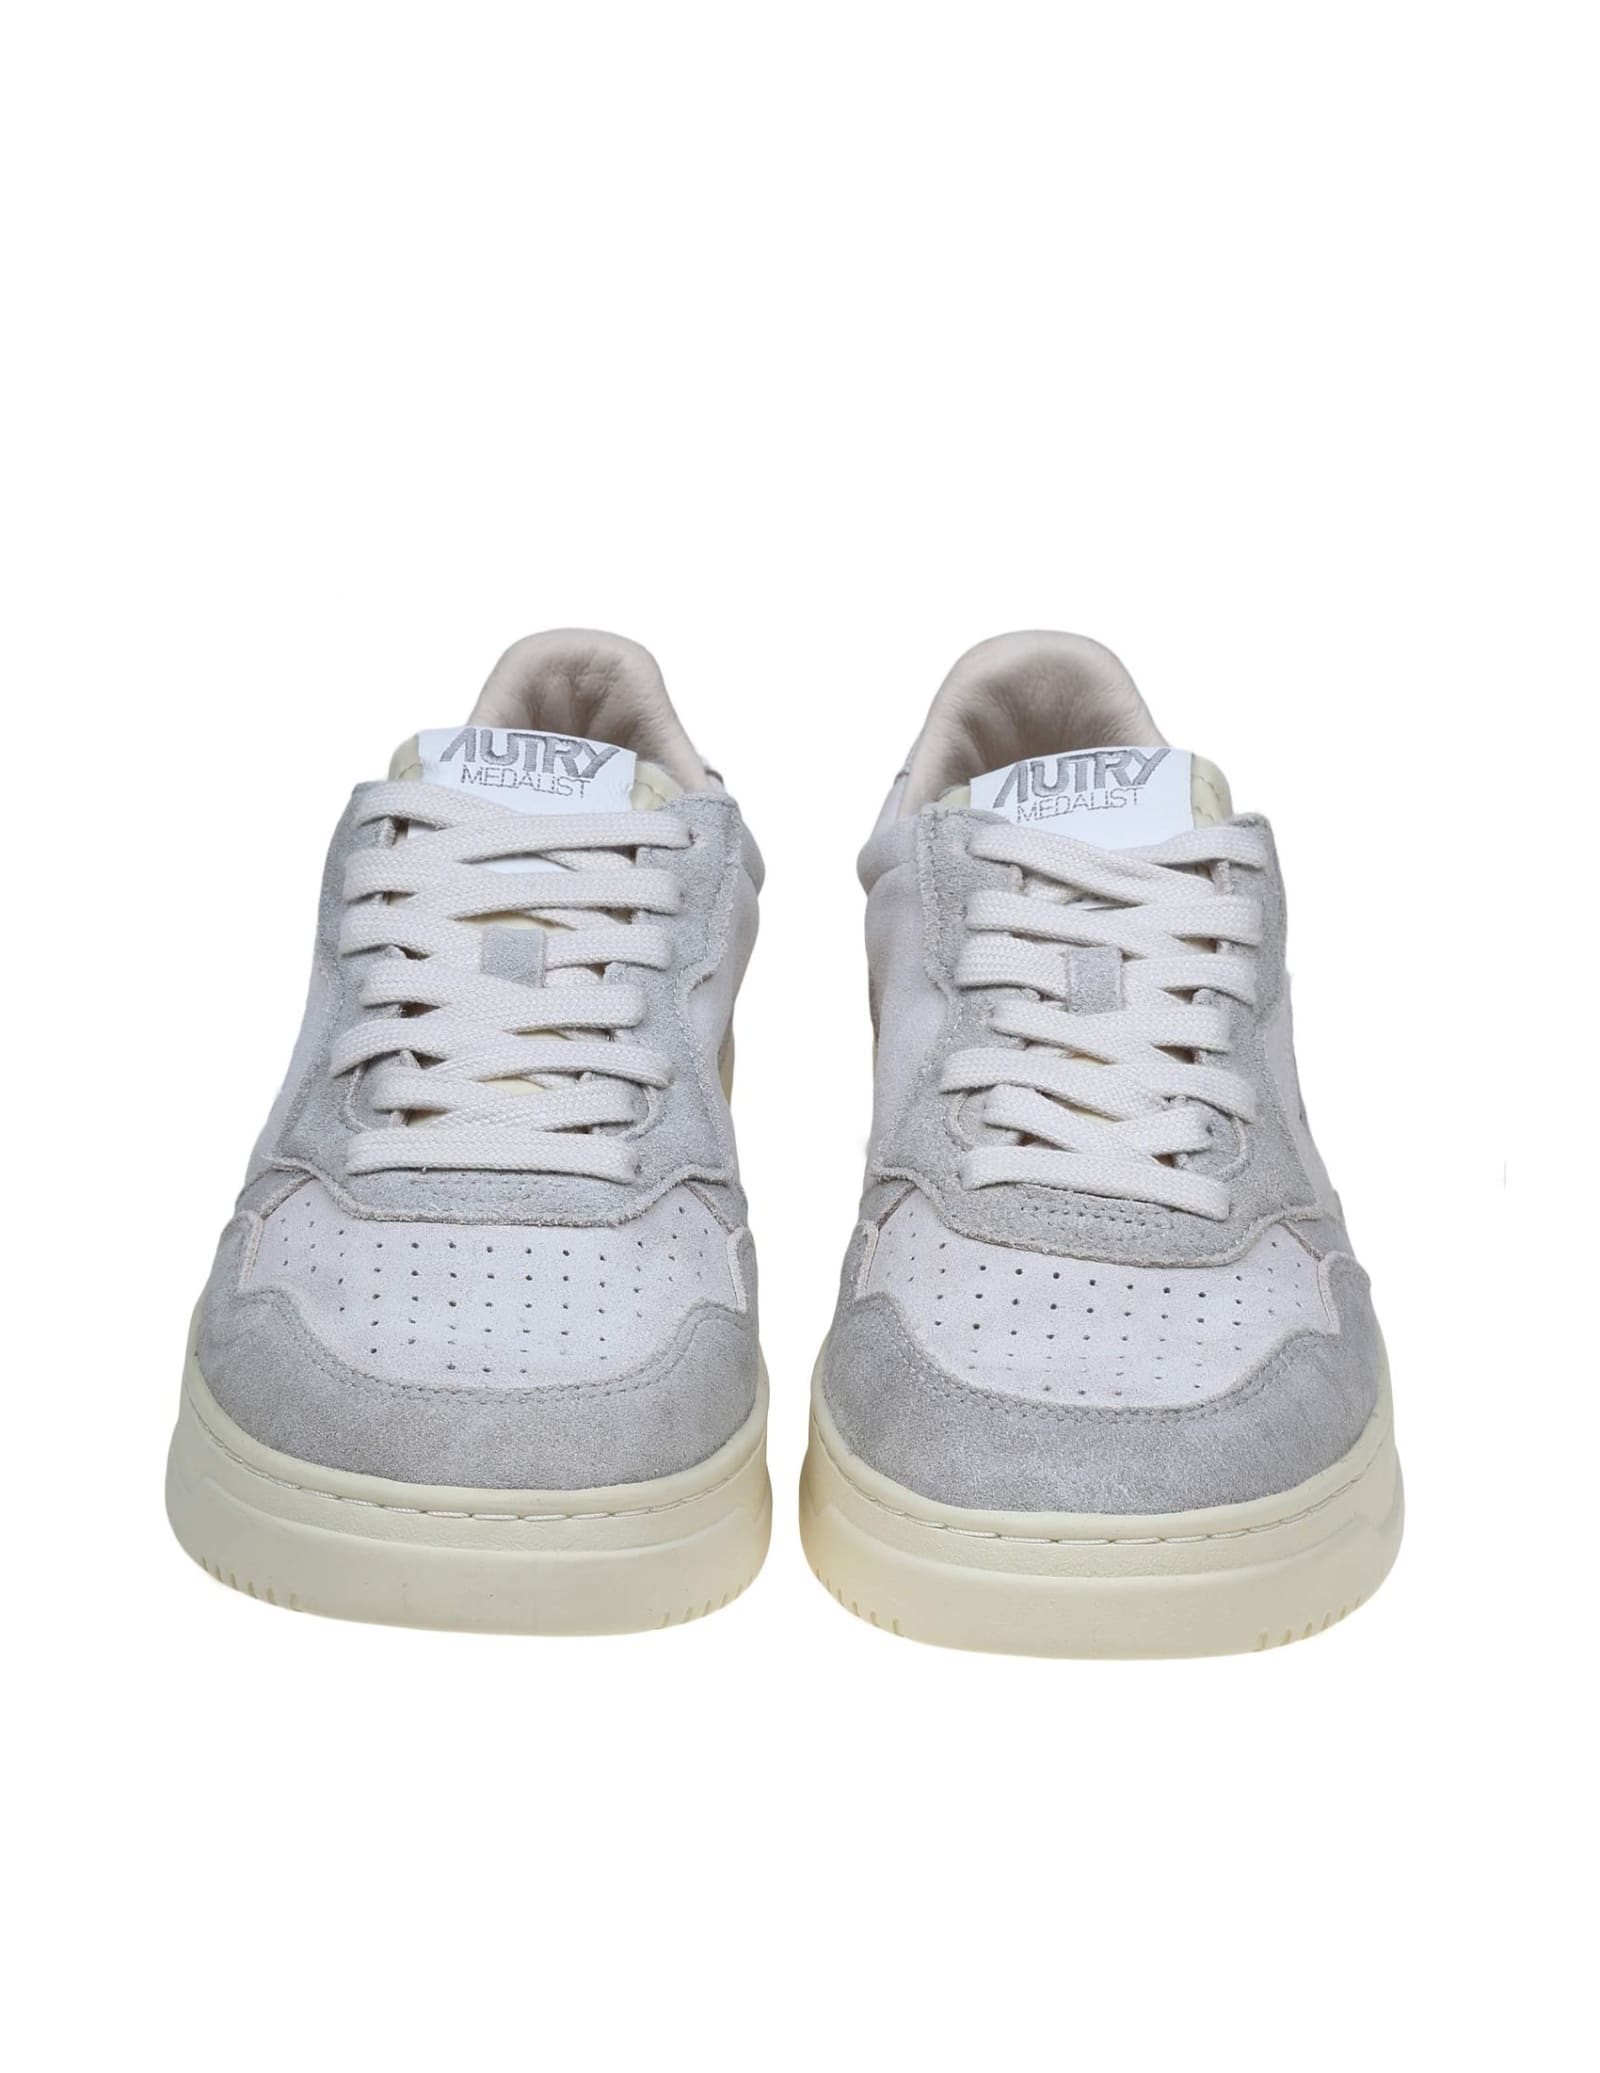 Shop Autry Cream/white Suede Sneakers In Cream White